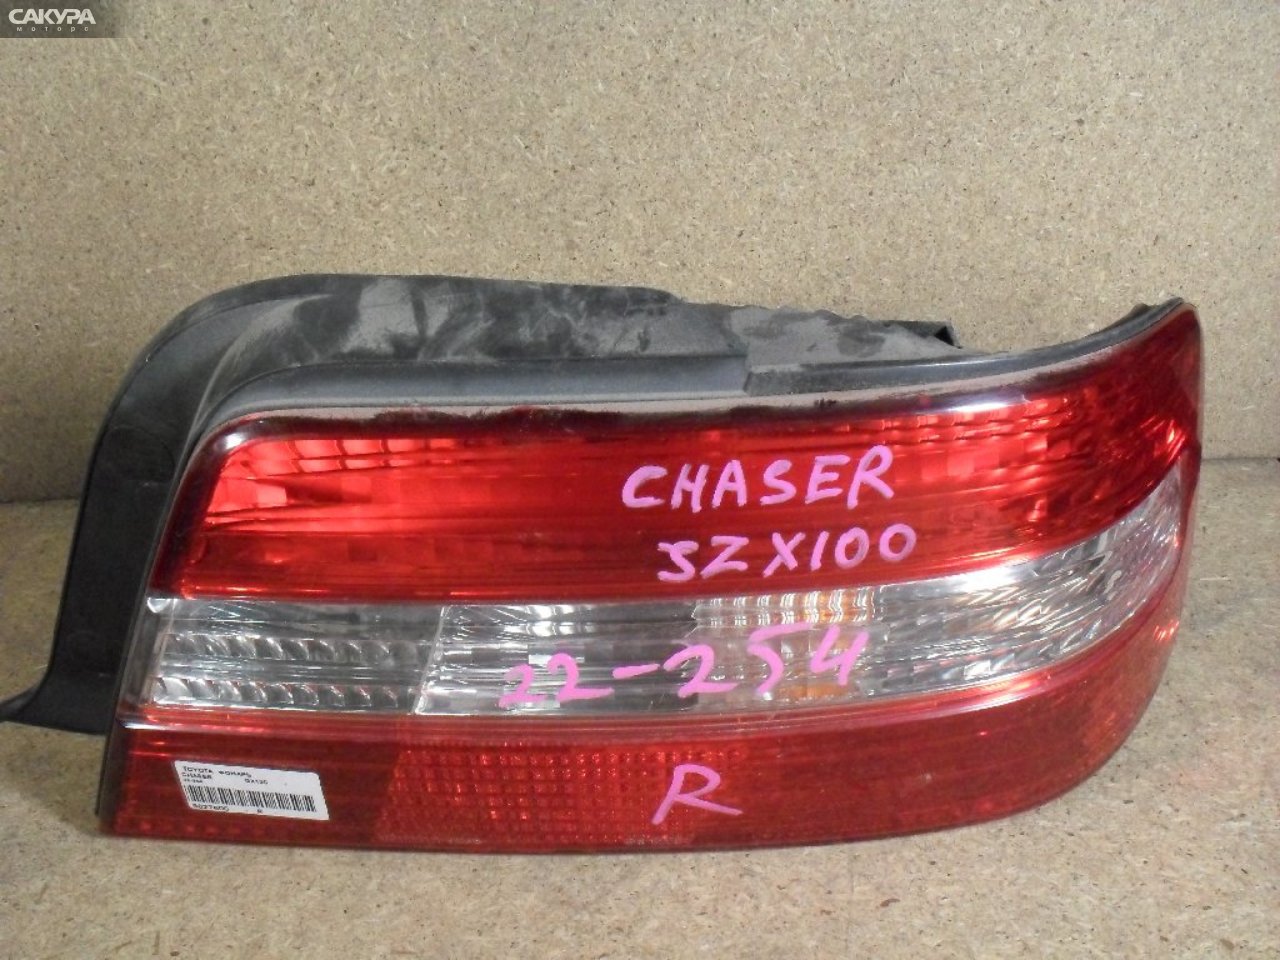 Фонарь стоп-сигнала правый Toyota Chaser GX100 22-254: купить в Сакура Абакан.